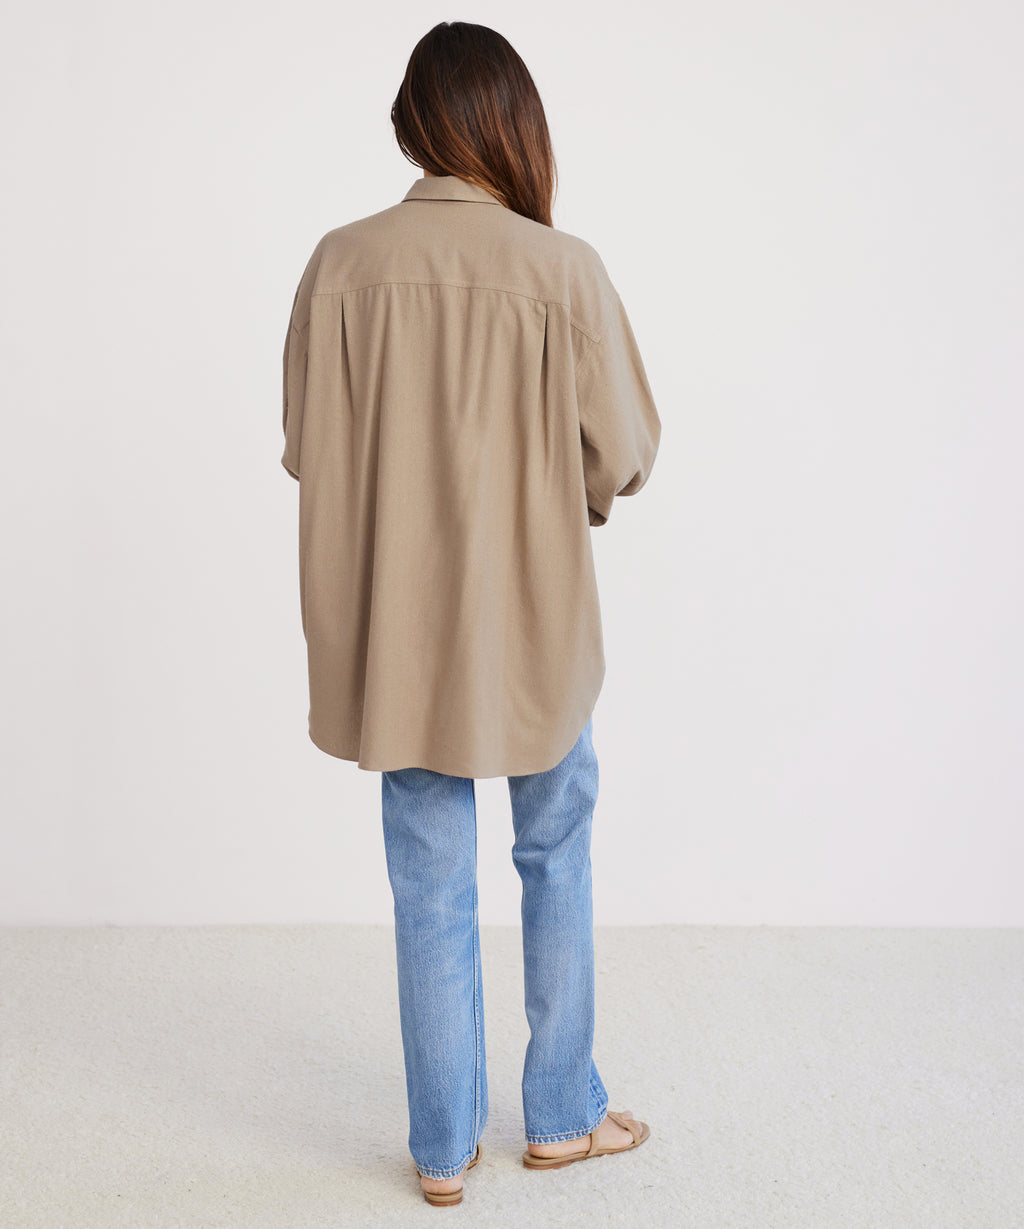 Jenni Kayne Women's Relaxed Oversized Shirt Size X-Large